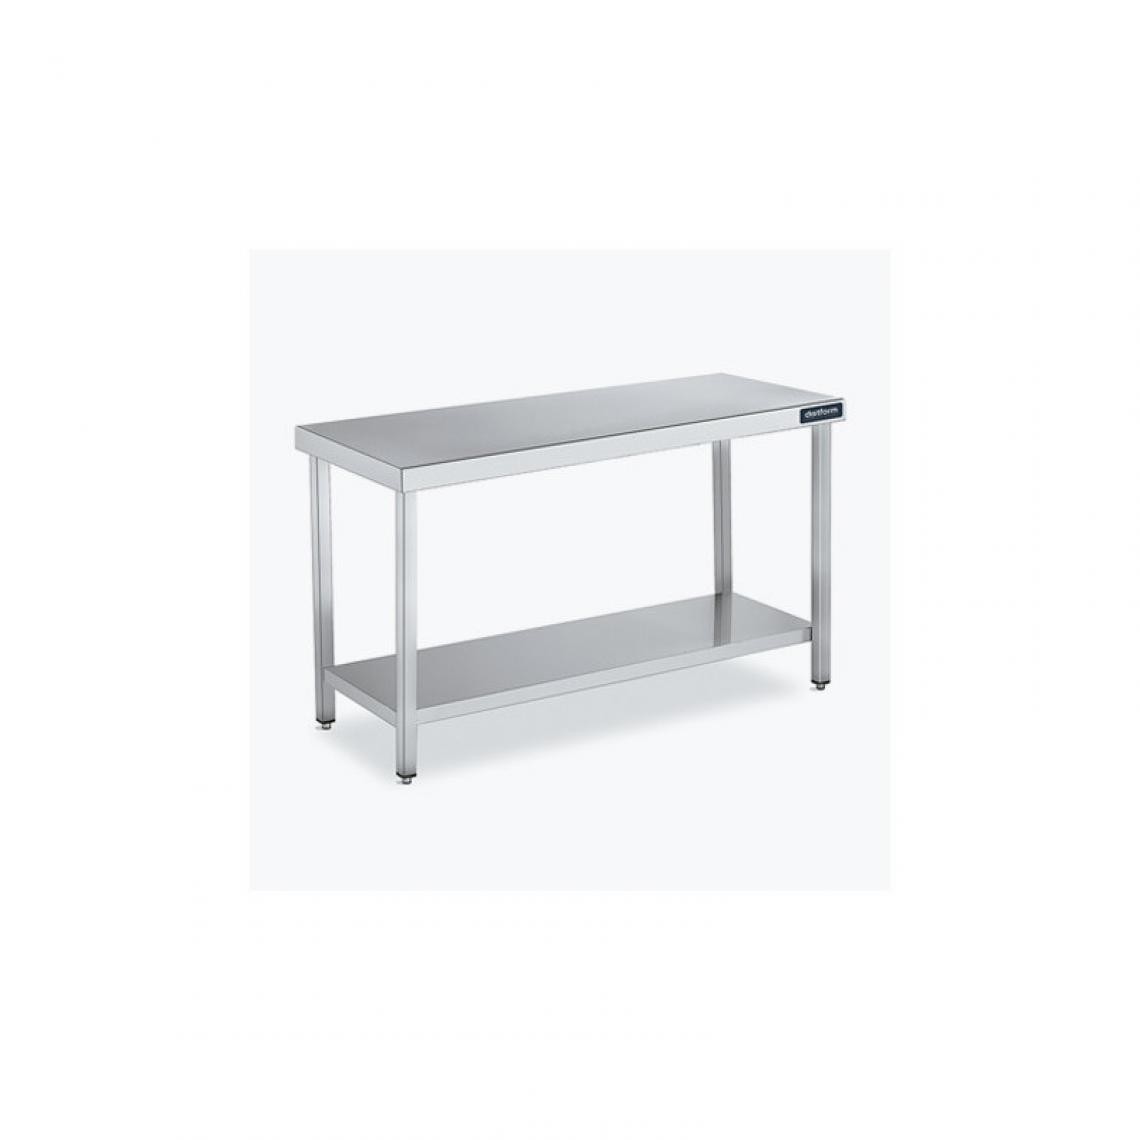 DISTFORM - Table Centrale 600x500 avec Étagère - Distform - Inox 18/10600x500x850mm - Tables à manger